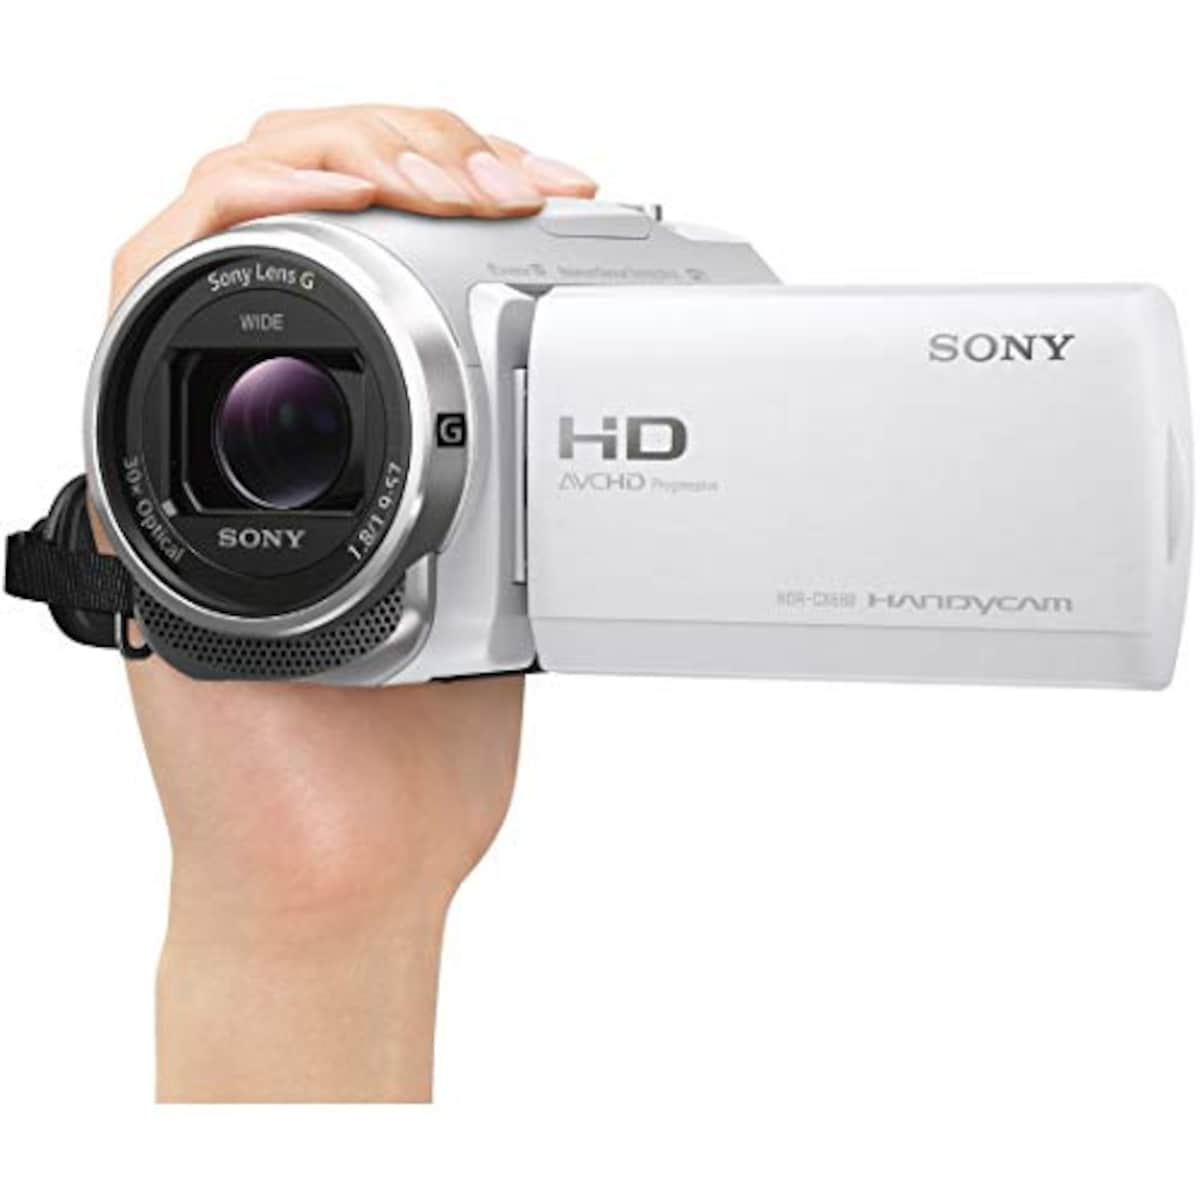  【CX680 と ケース&ストラップ セット】 大切なカメラをキズや汚れからガードしたい方に。HDR-CX680 ホワイト + LCS-MCS2 ライトブラウン画像9 